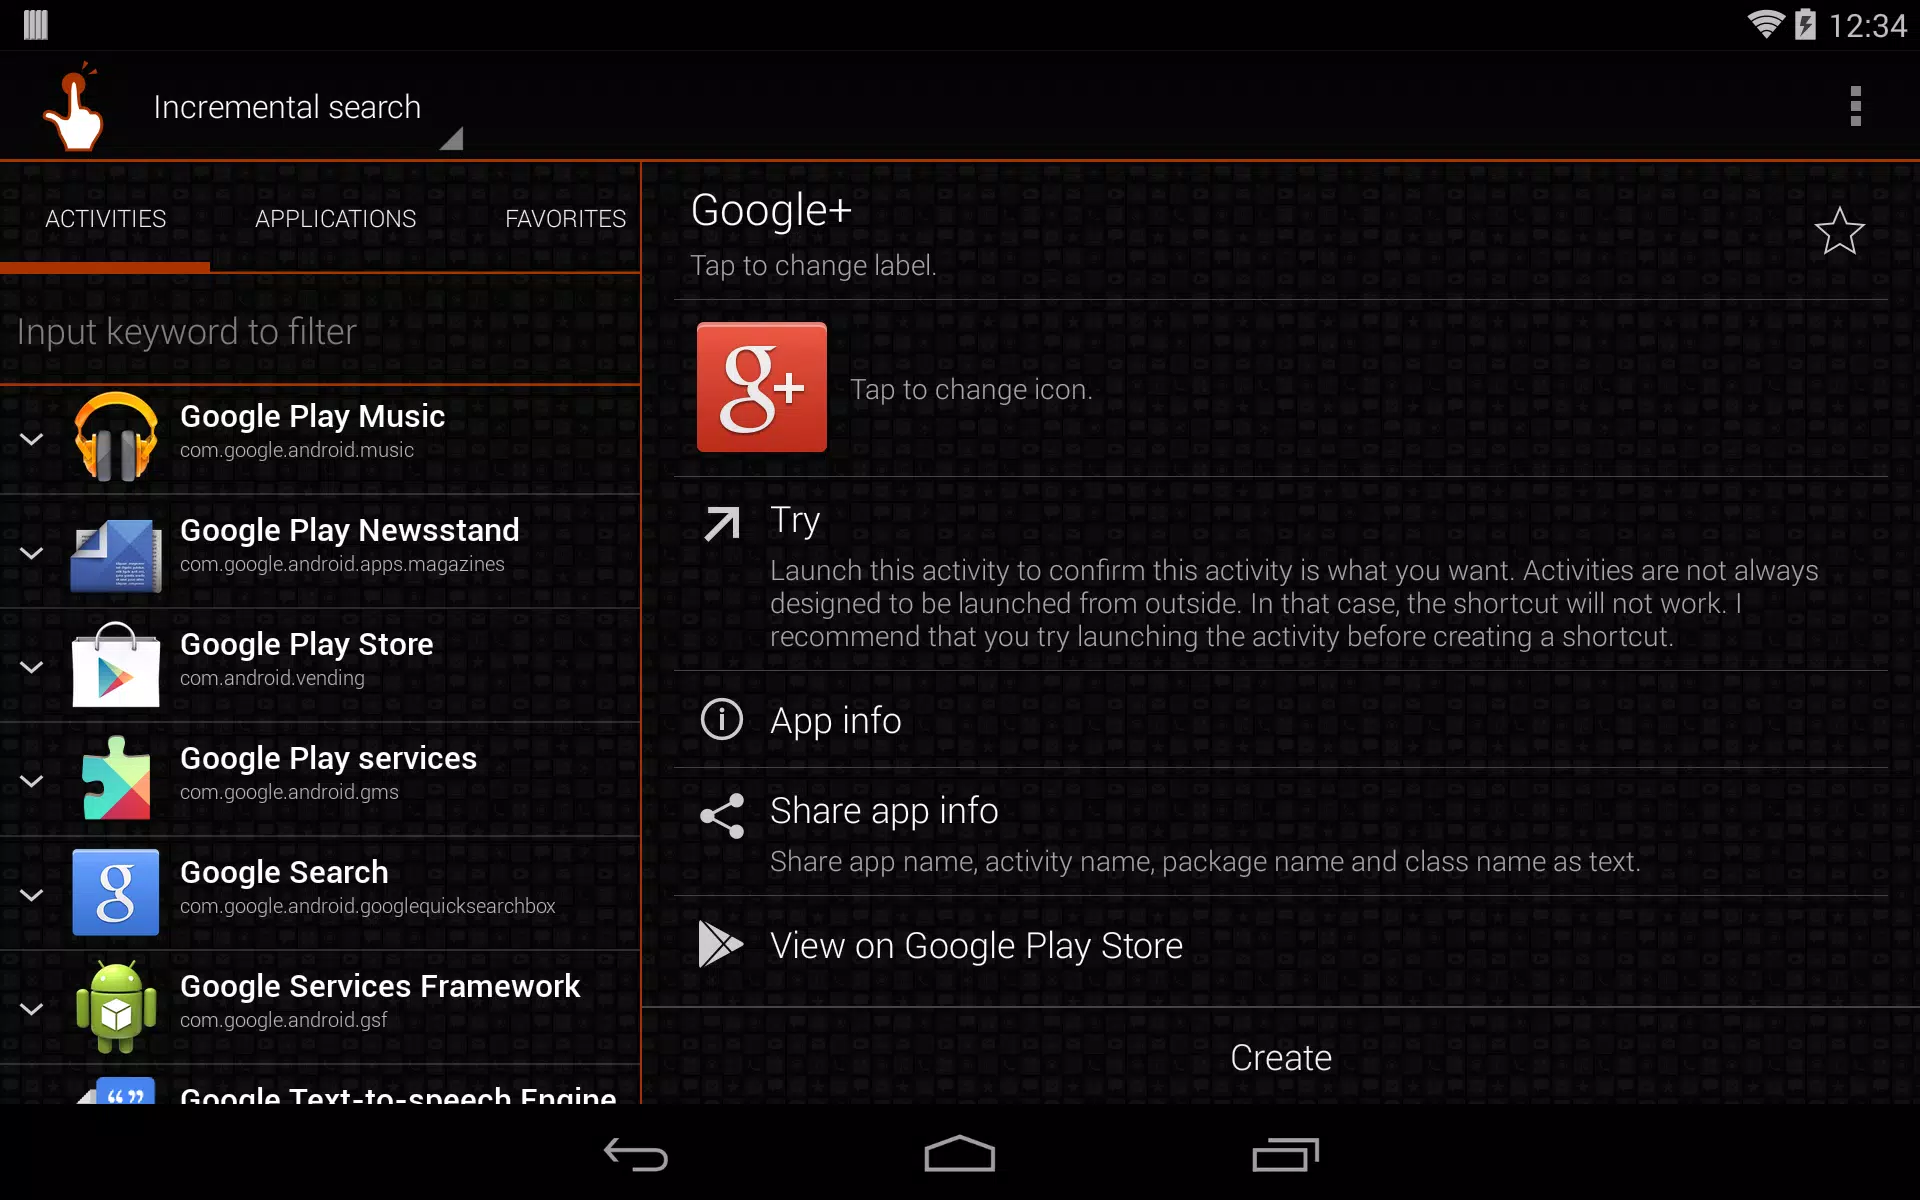 QuickShort - Apps on Google Play